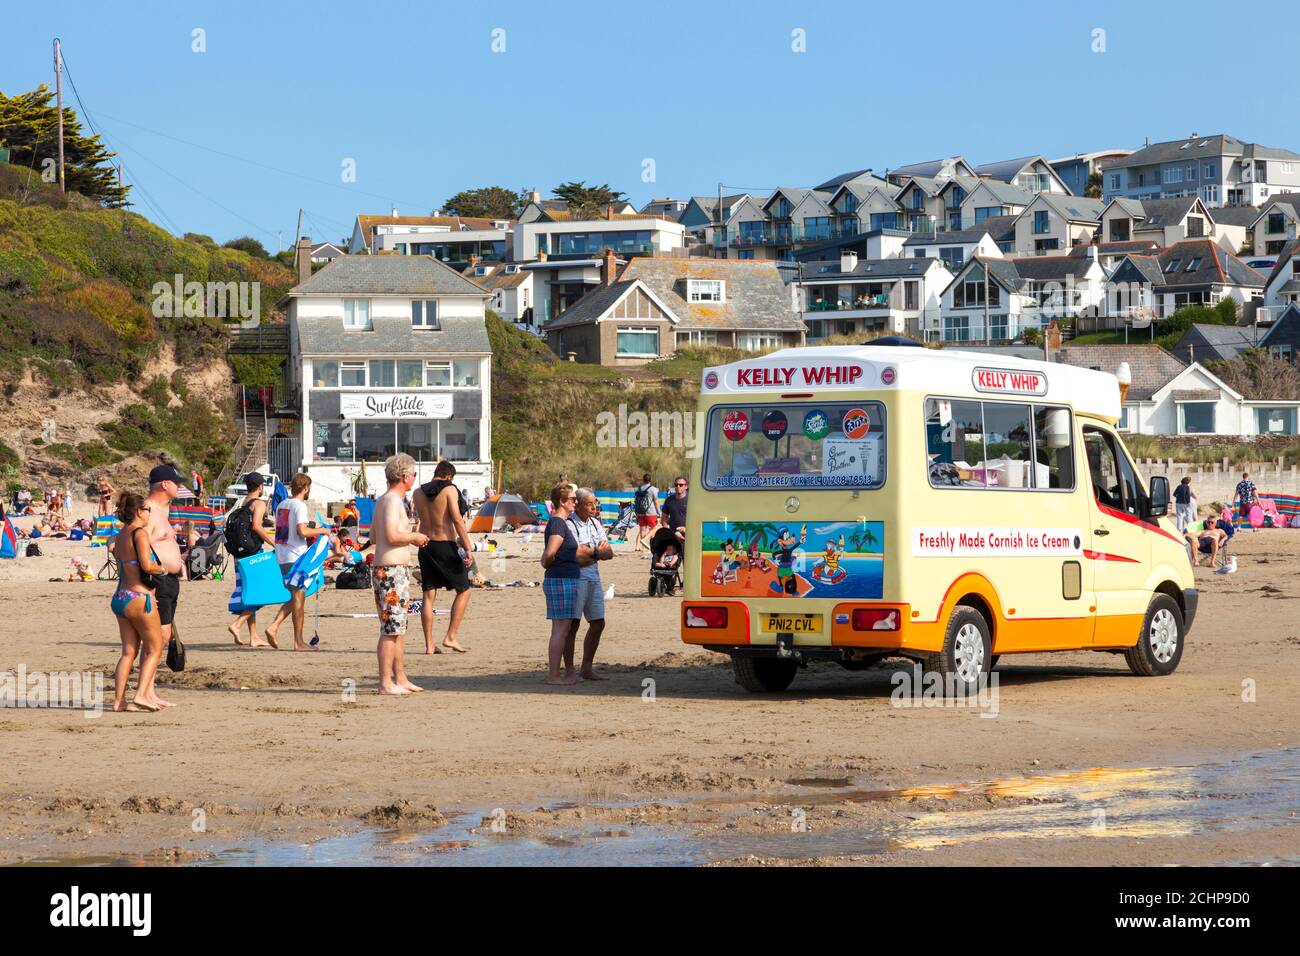 Polzeath, Cornwall, Reino Unido. 14 de septiembre de 2020. Turistas distancia social haciendo cola para helado en una cálida tarde soleada en la playa de Polzeath en la costa atlántica de Cornualles del Norte. Foto de stock